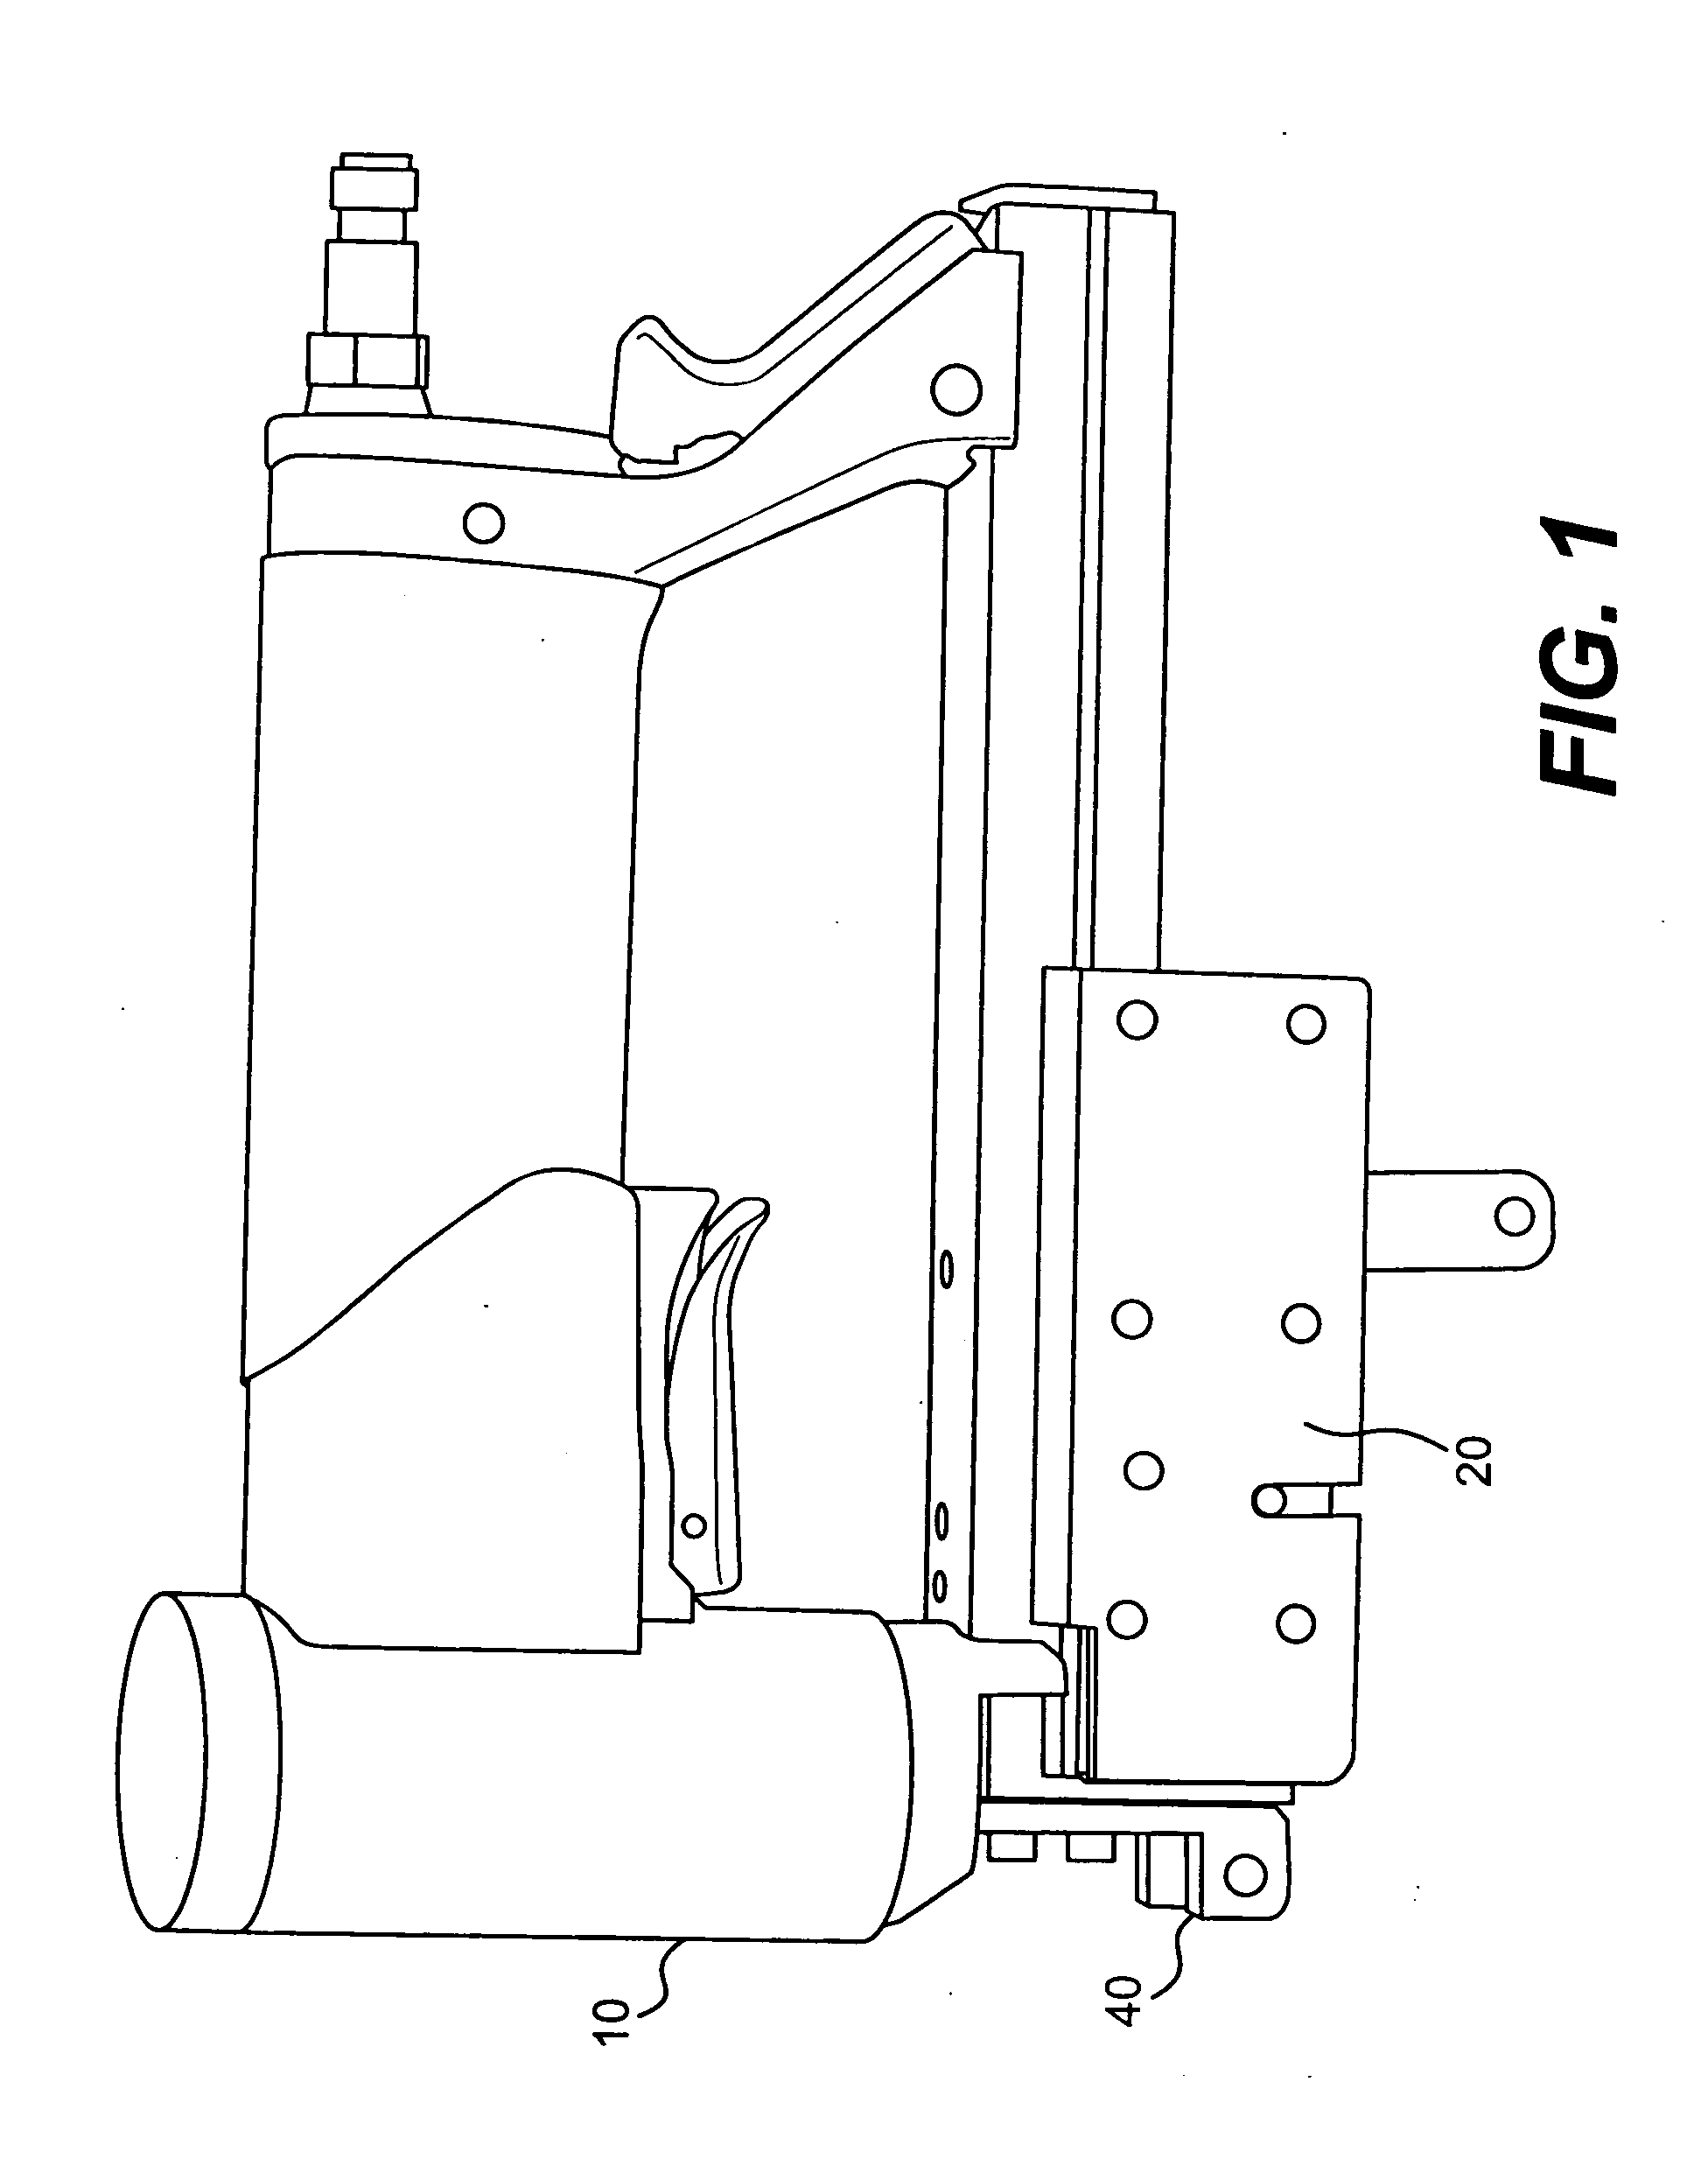 Staple gun apparatus for attaching tab